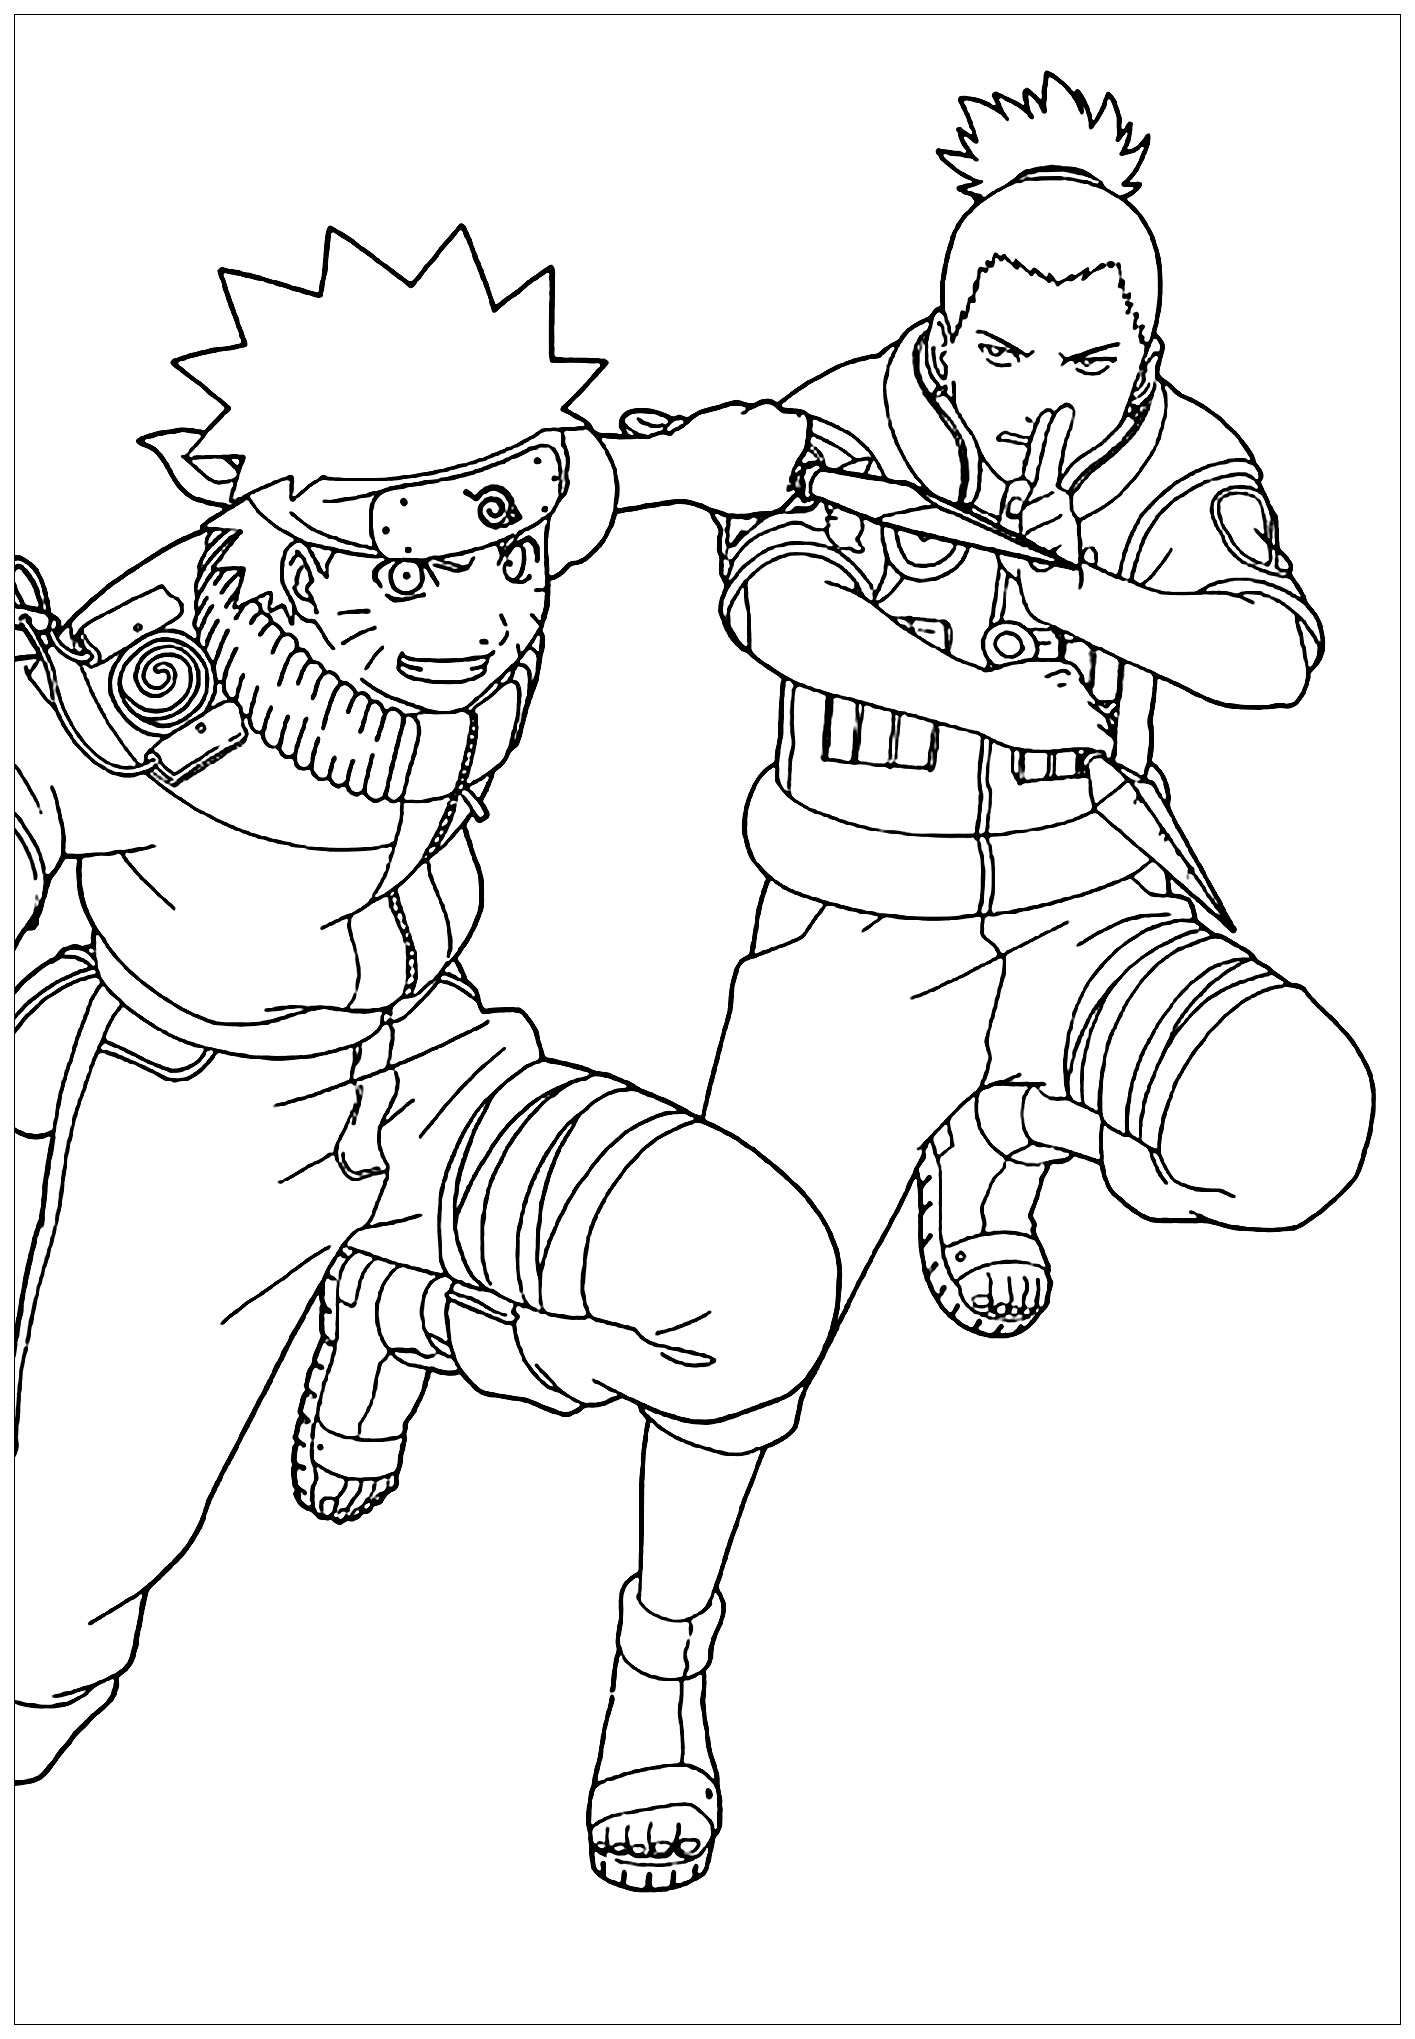 Coloring of Naruto and Shikamaru